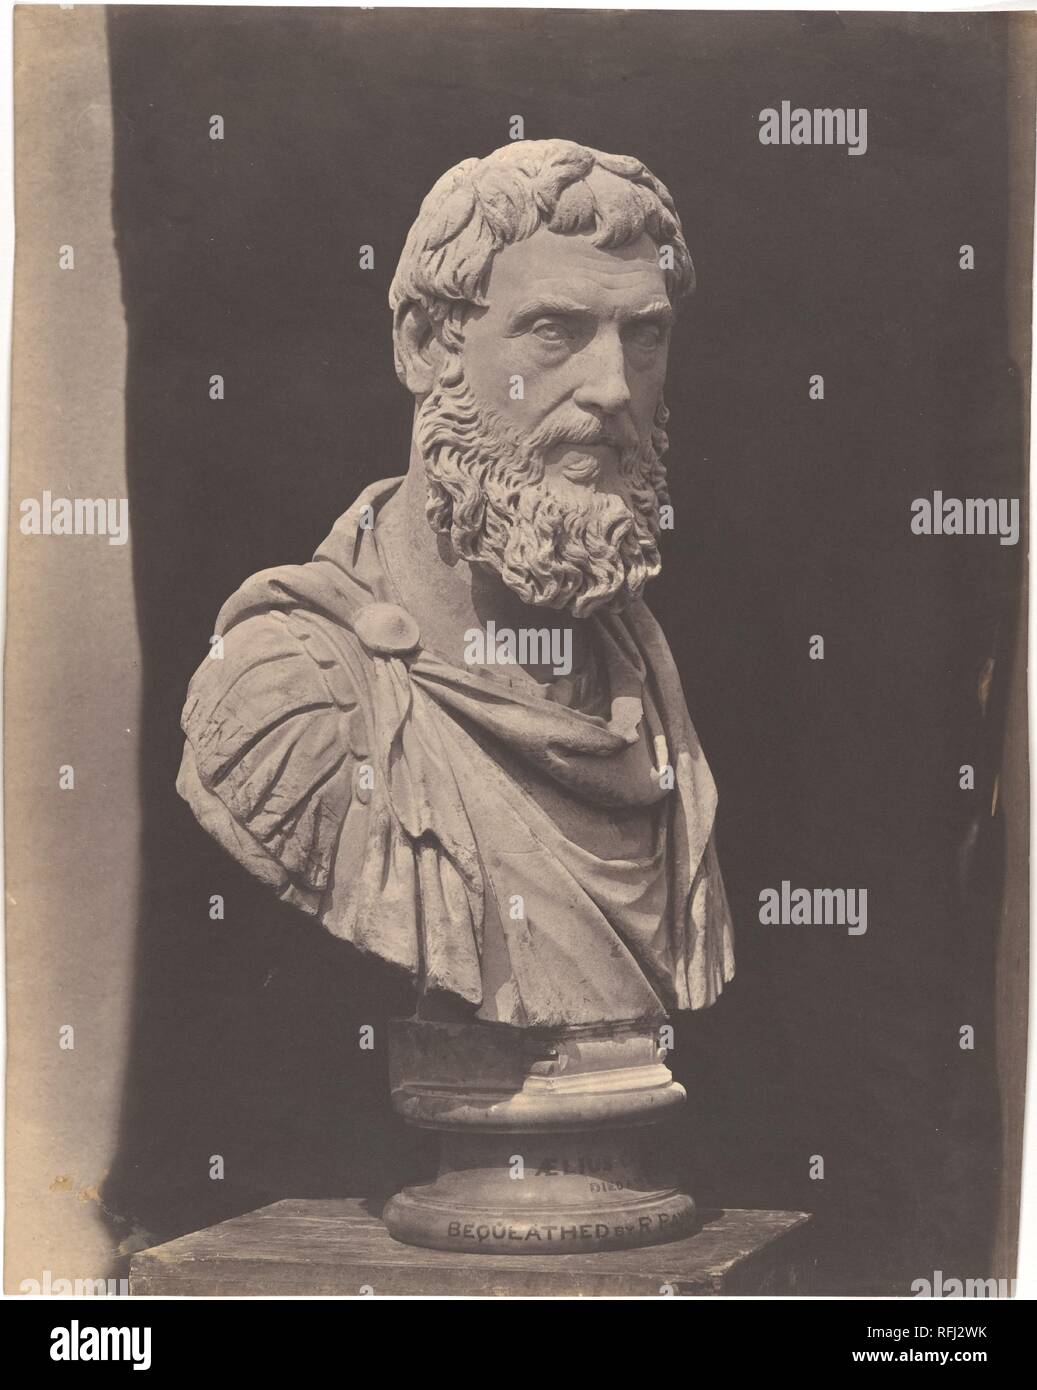 Aelius Caesar. Artist: Roger Fenton (British, 1819-1869). Dimensions: 36.8 x 29.2 cm (14 1/2 x 11 1/2 in.). Date: 1854-58. Museum: Metropolitan Museum of Art, New York, USA. Stock Photo